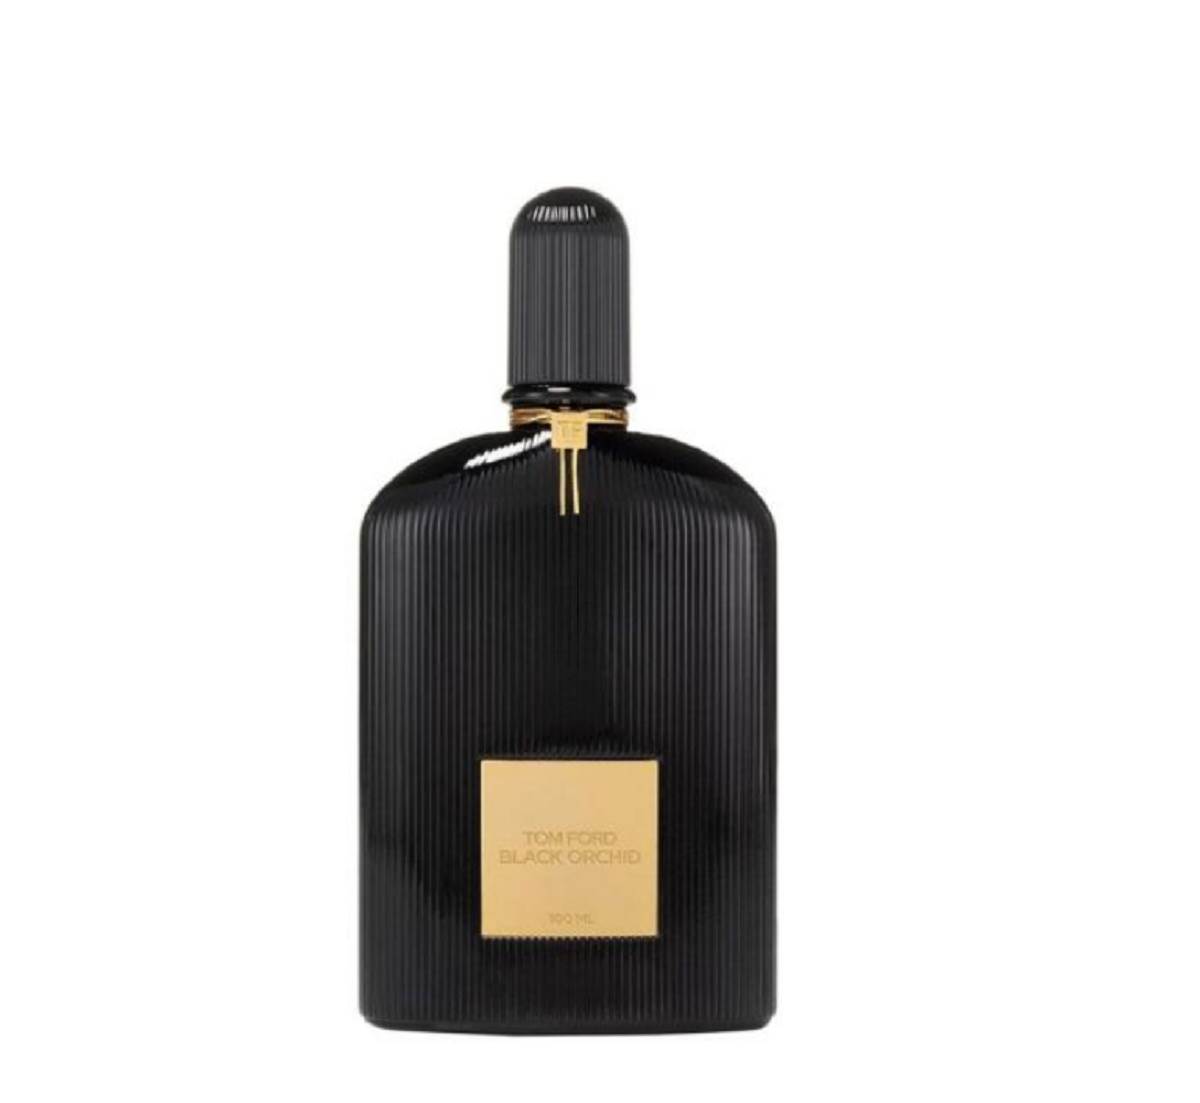  Tom Ford je među omiljenim markama parfema žena. 